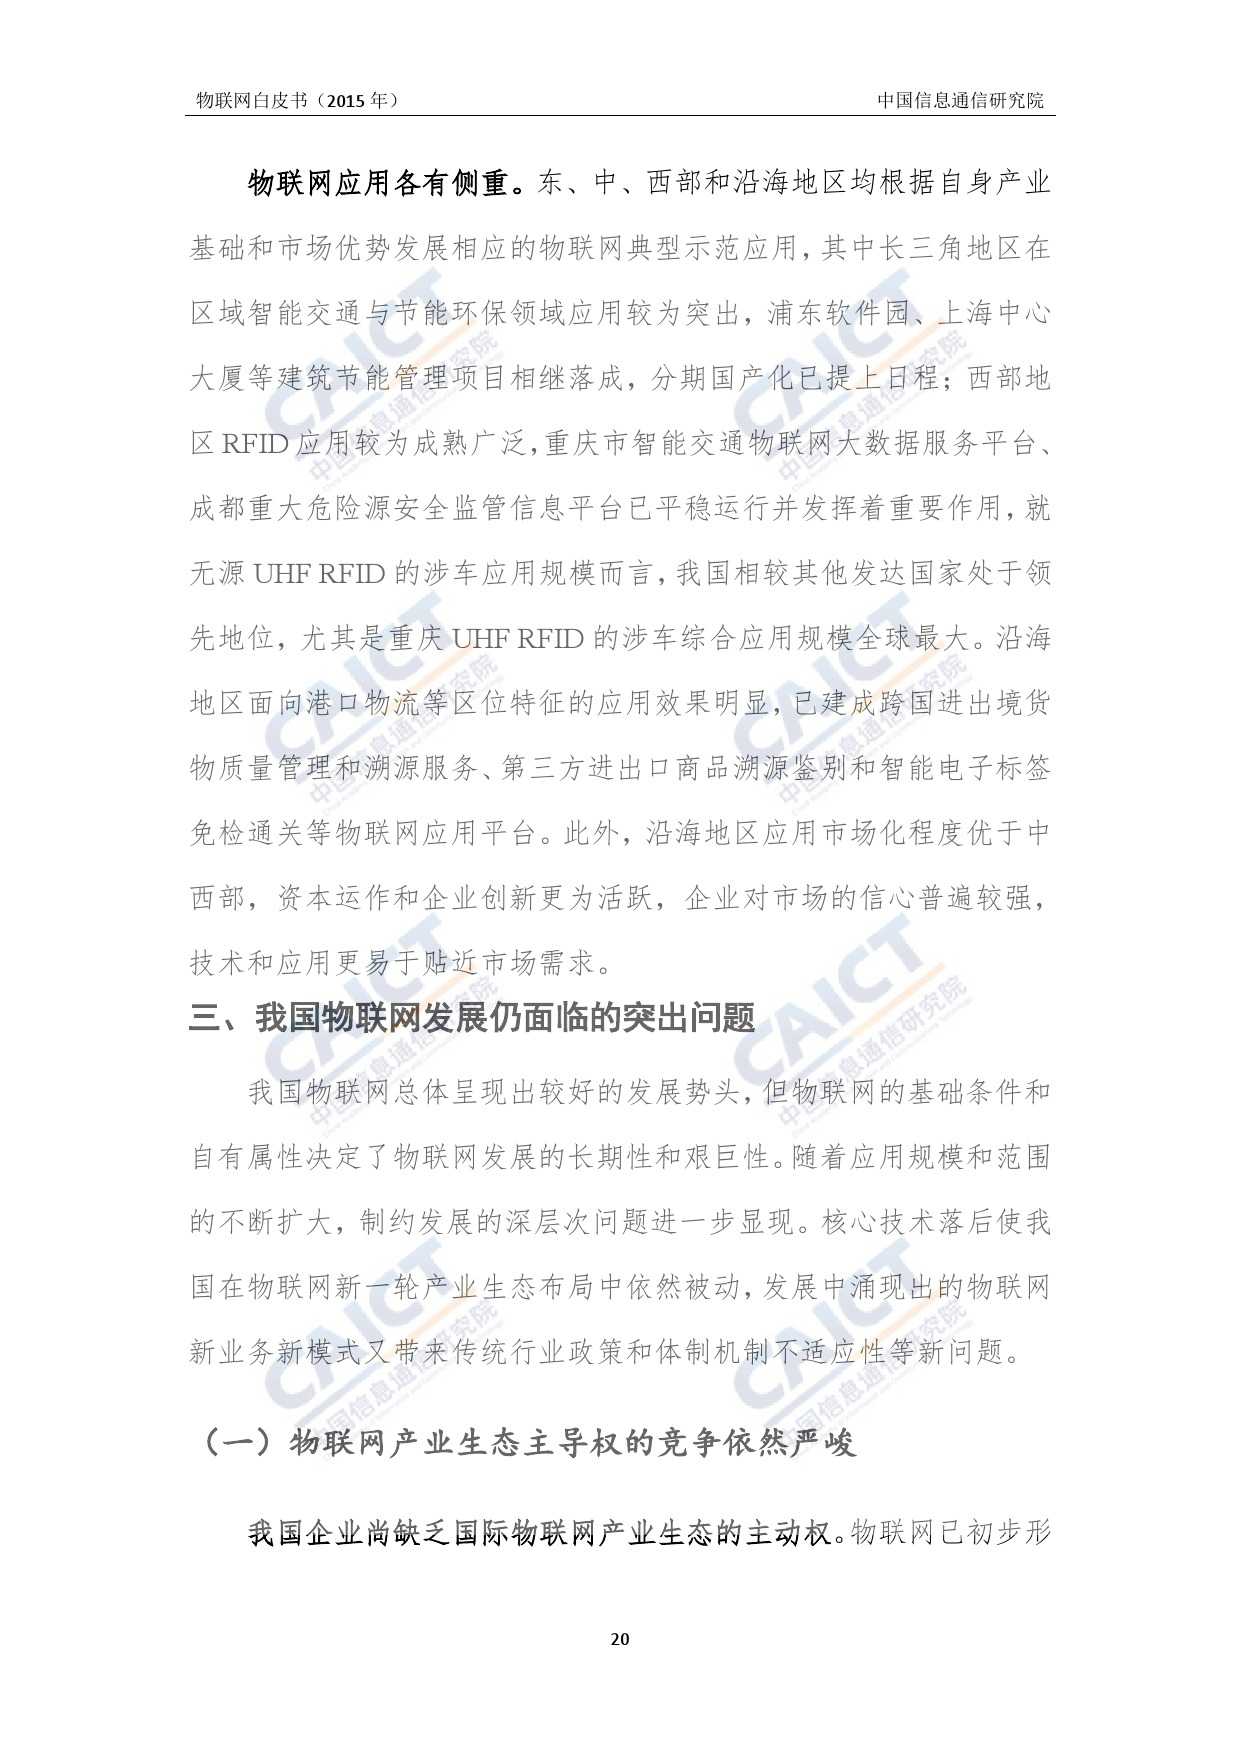 中国信息通信研究院：2015年物联网白皮书_000024